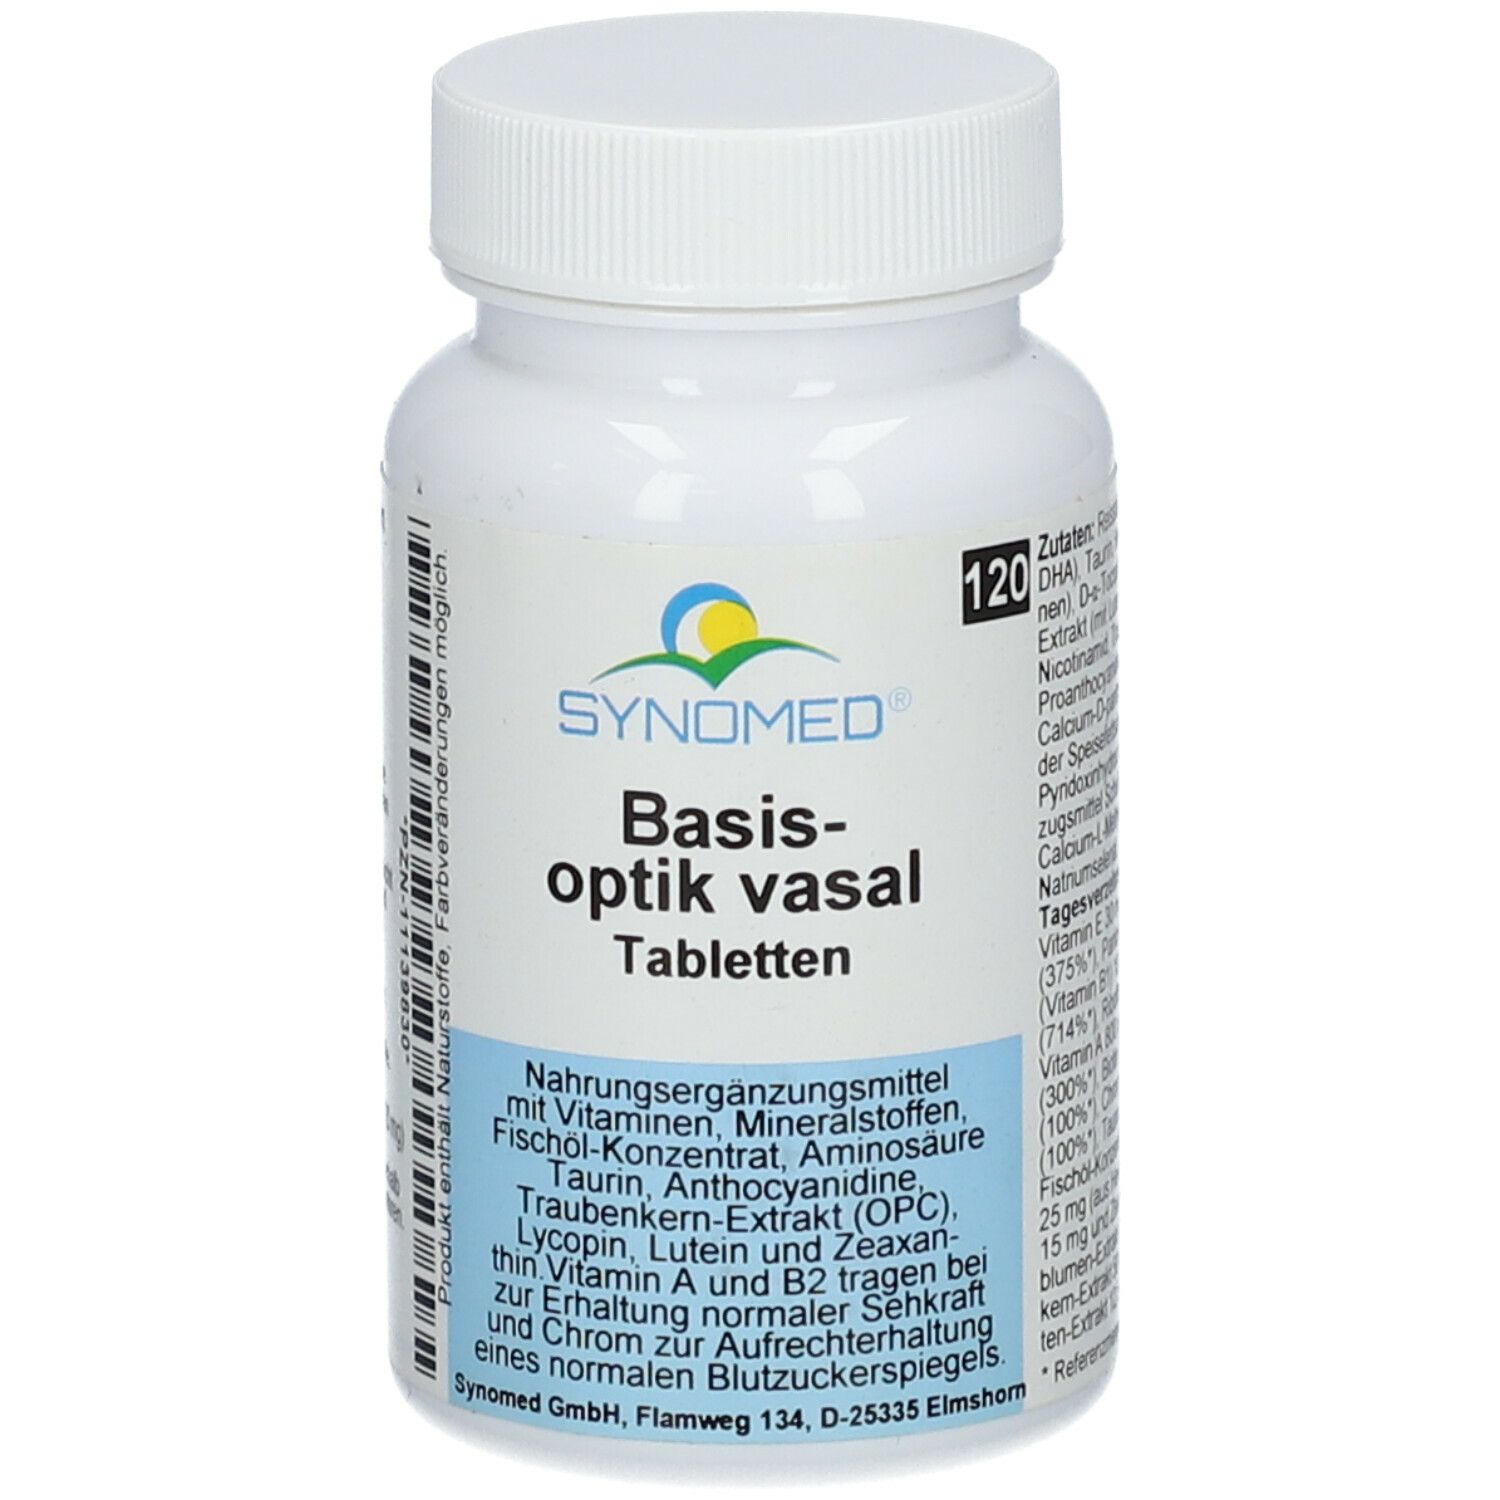 SYNOMED Basis-optik vasal